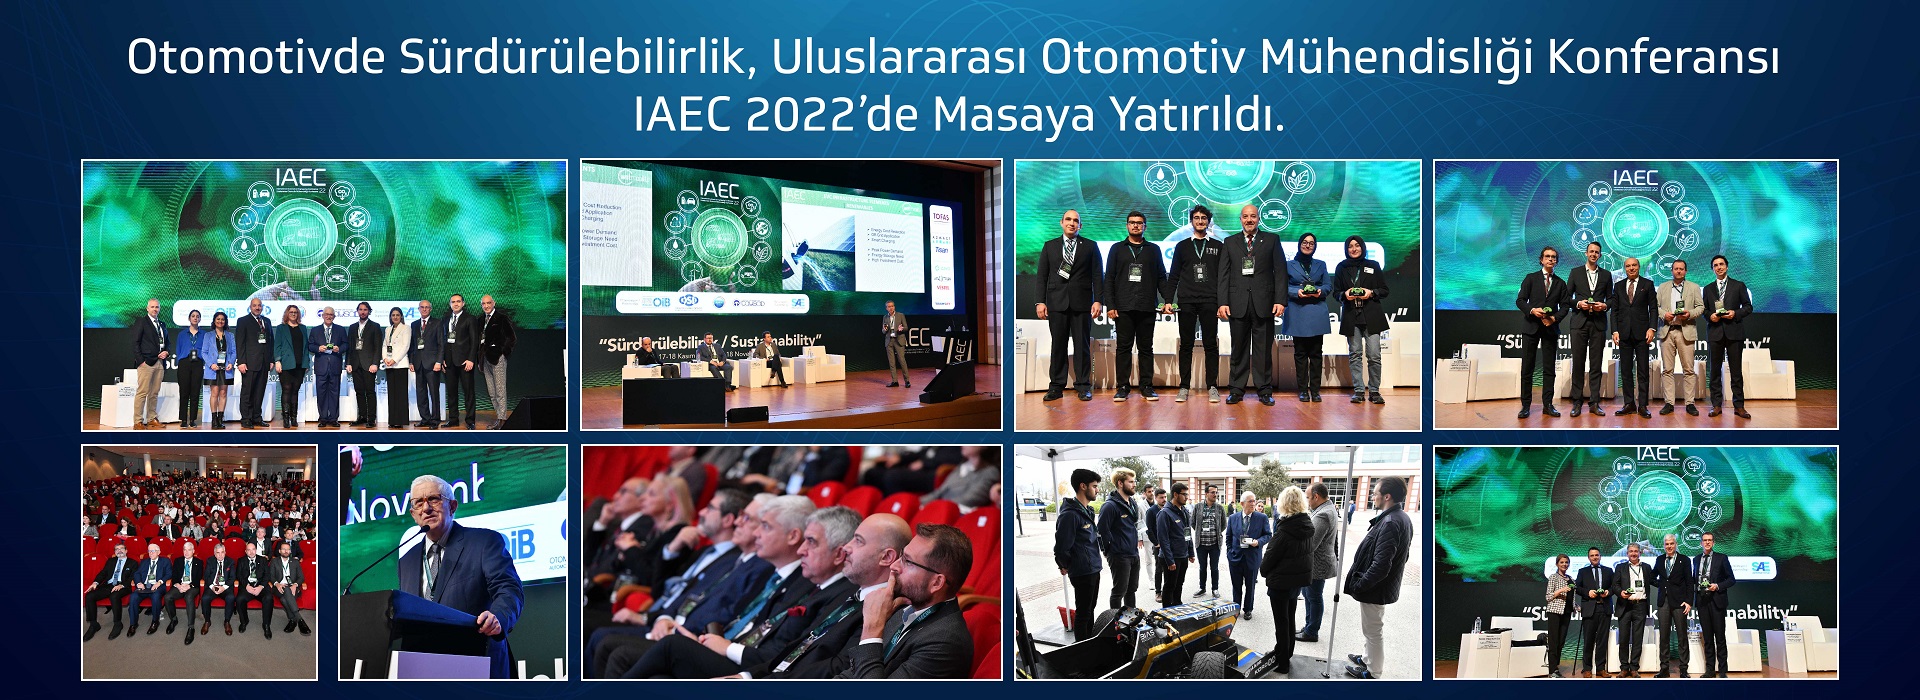 Otomotivde Sürdürülebilirlik, Uluslararası Otomotiv Mühendisliği Konferansı - IAEC 2022’de Masaya Yatırıldı 